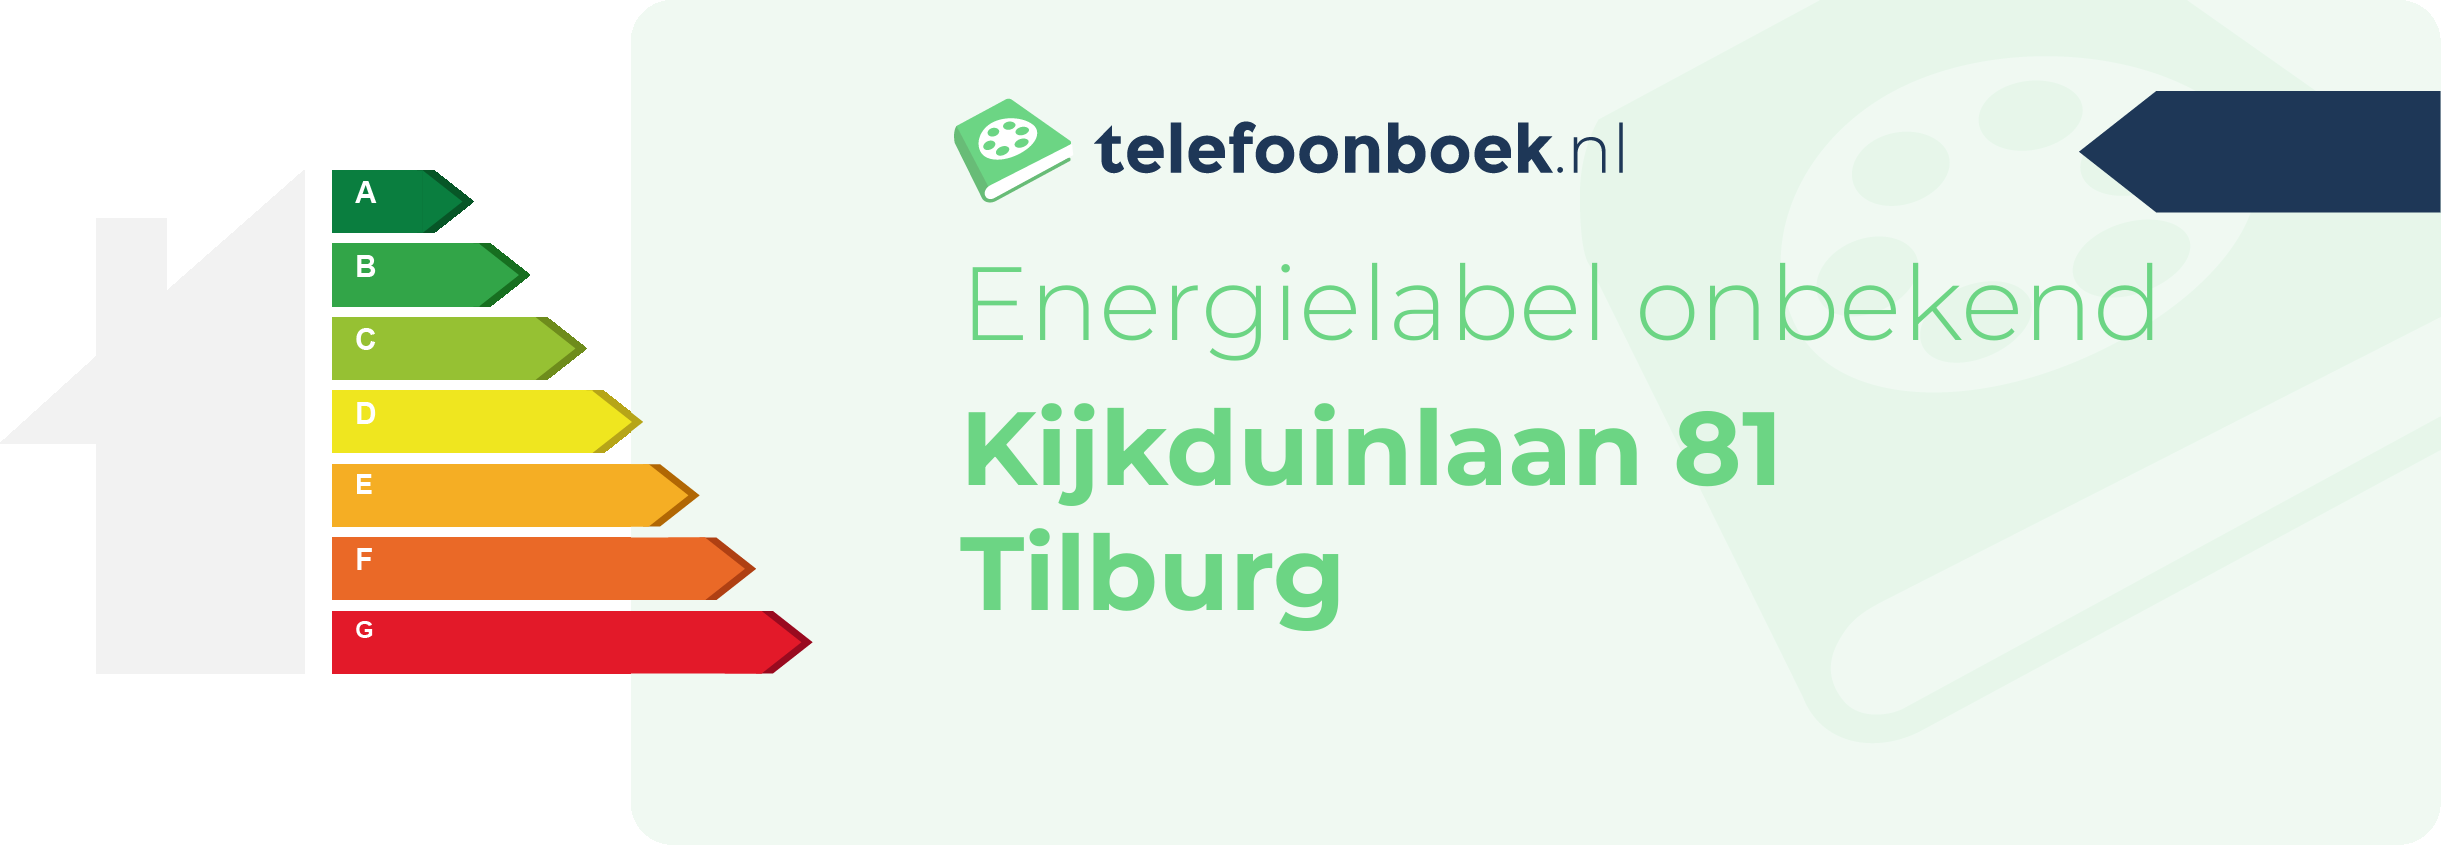 Energielabel Kijkduinlaan 81 Tilburg